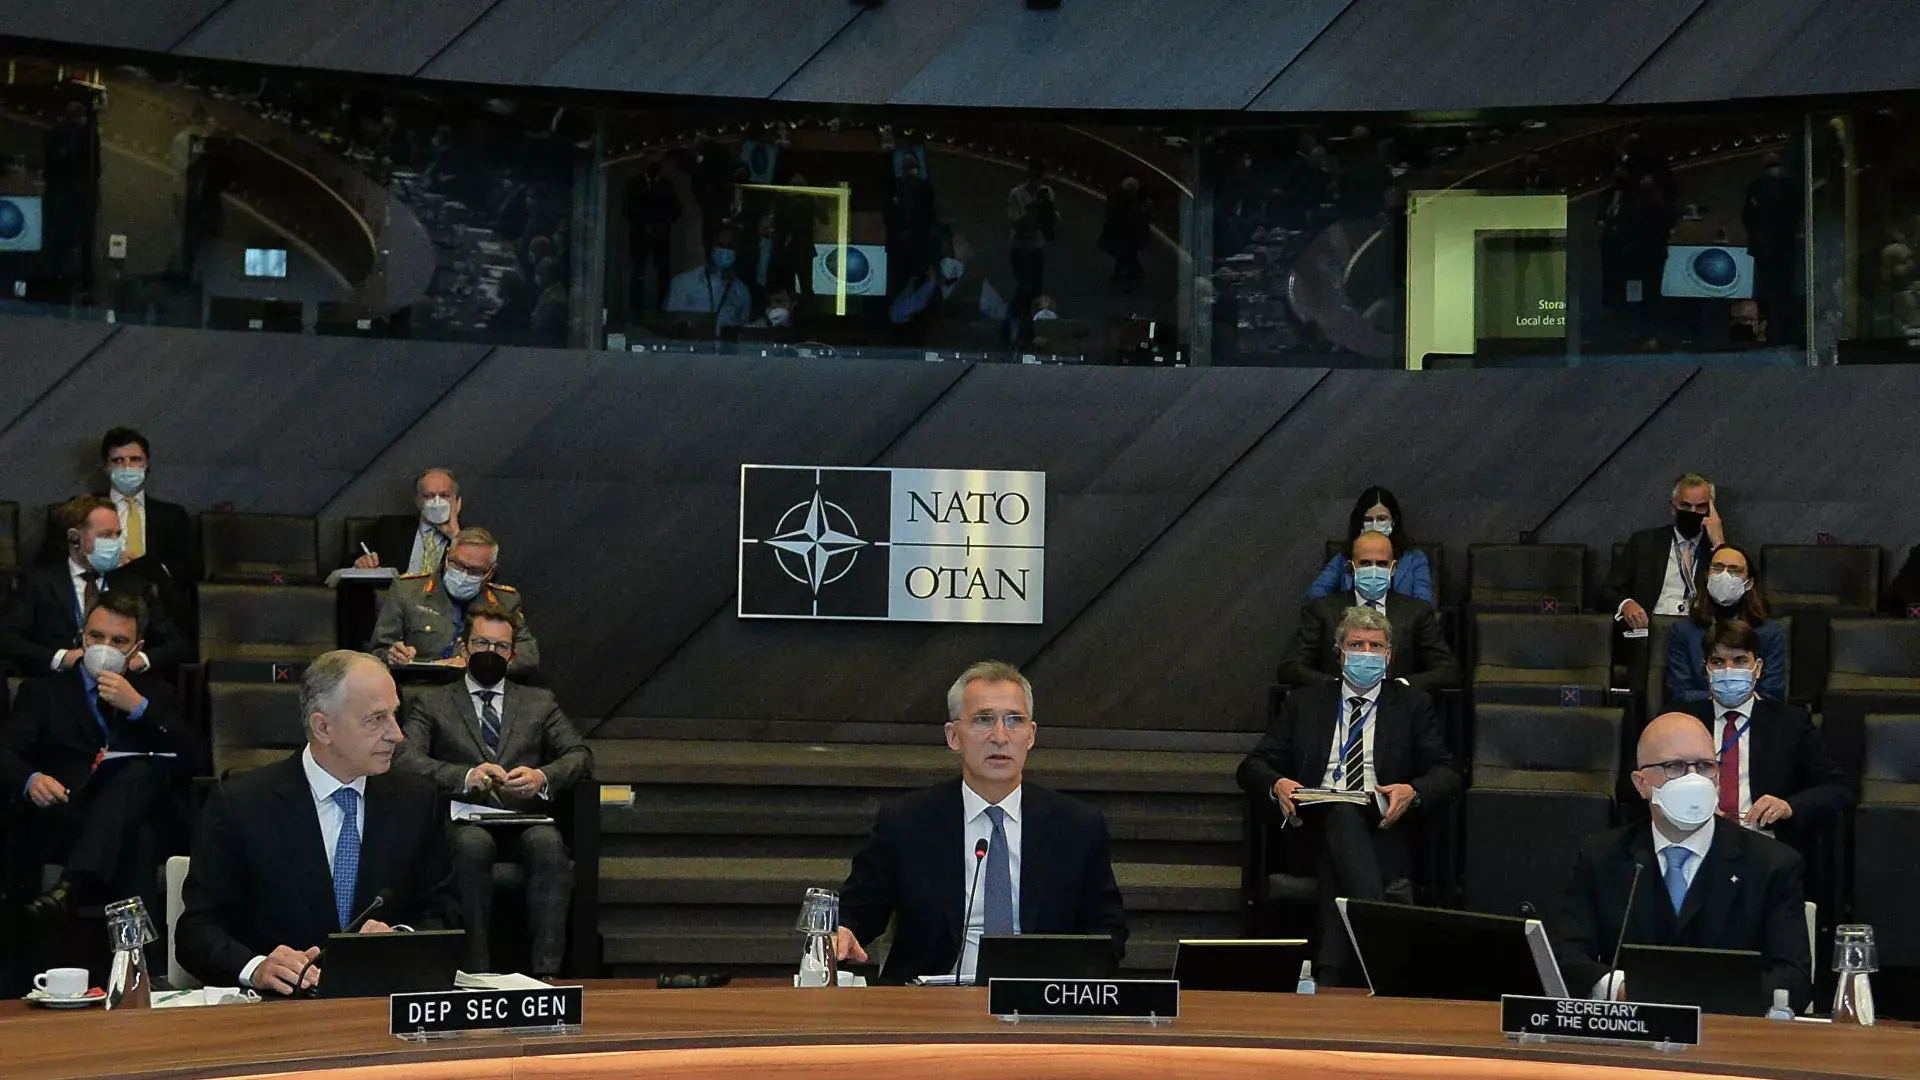 Что говорит нато о россии. НАТО заседание 2022. Заседание совета Россия–НАТО 2022. Переговоры Россия НАТО январь 2022. НАТО заседание 2002.